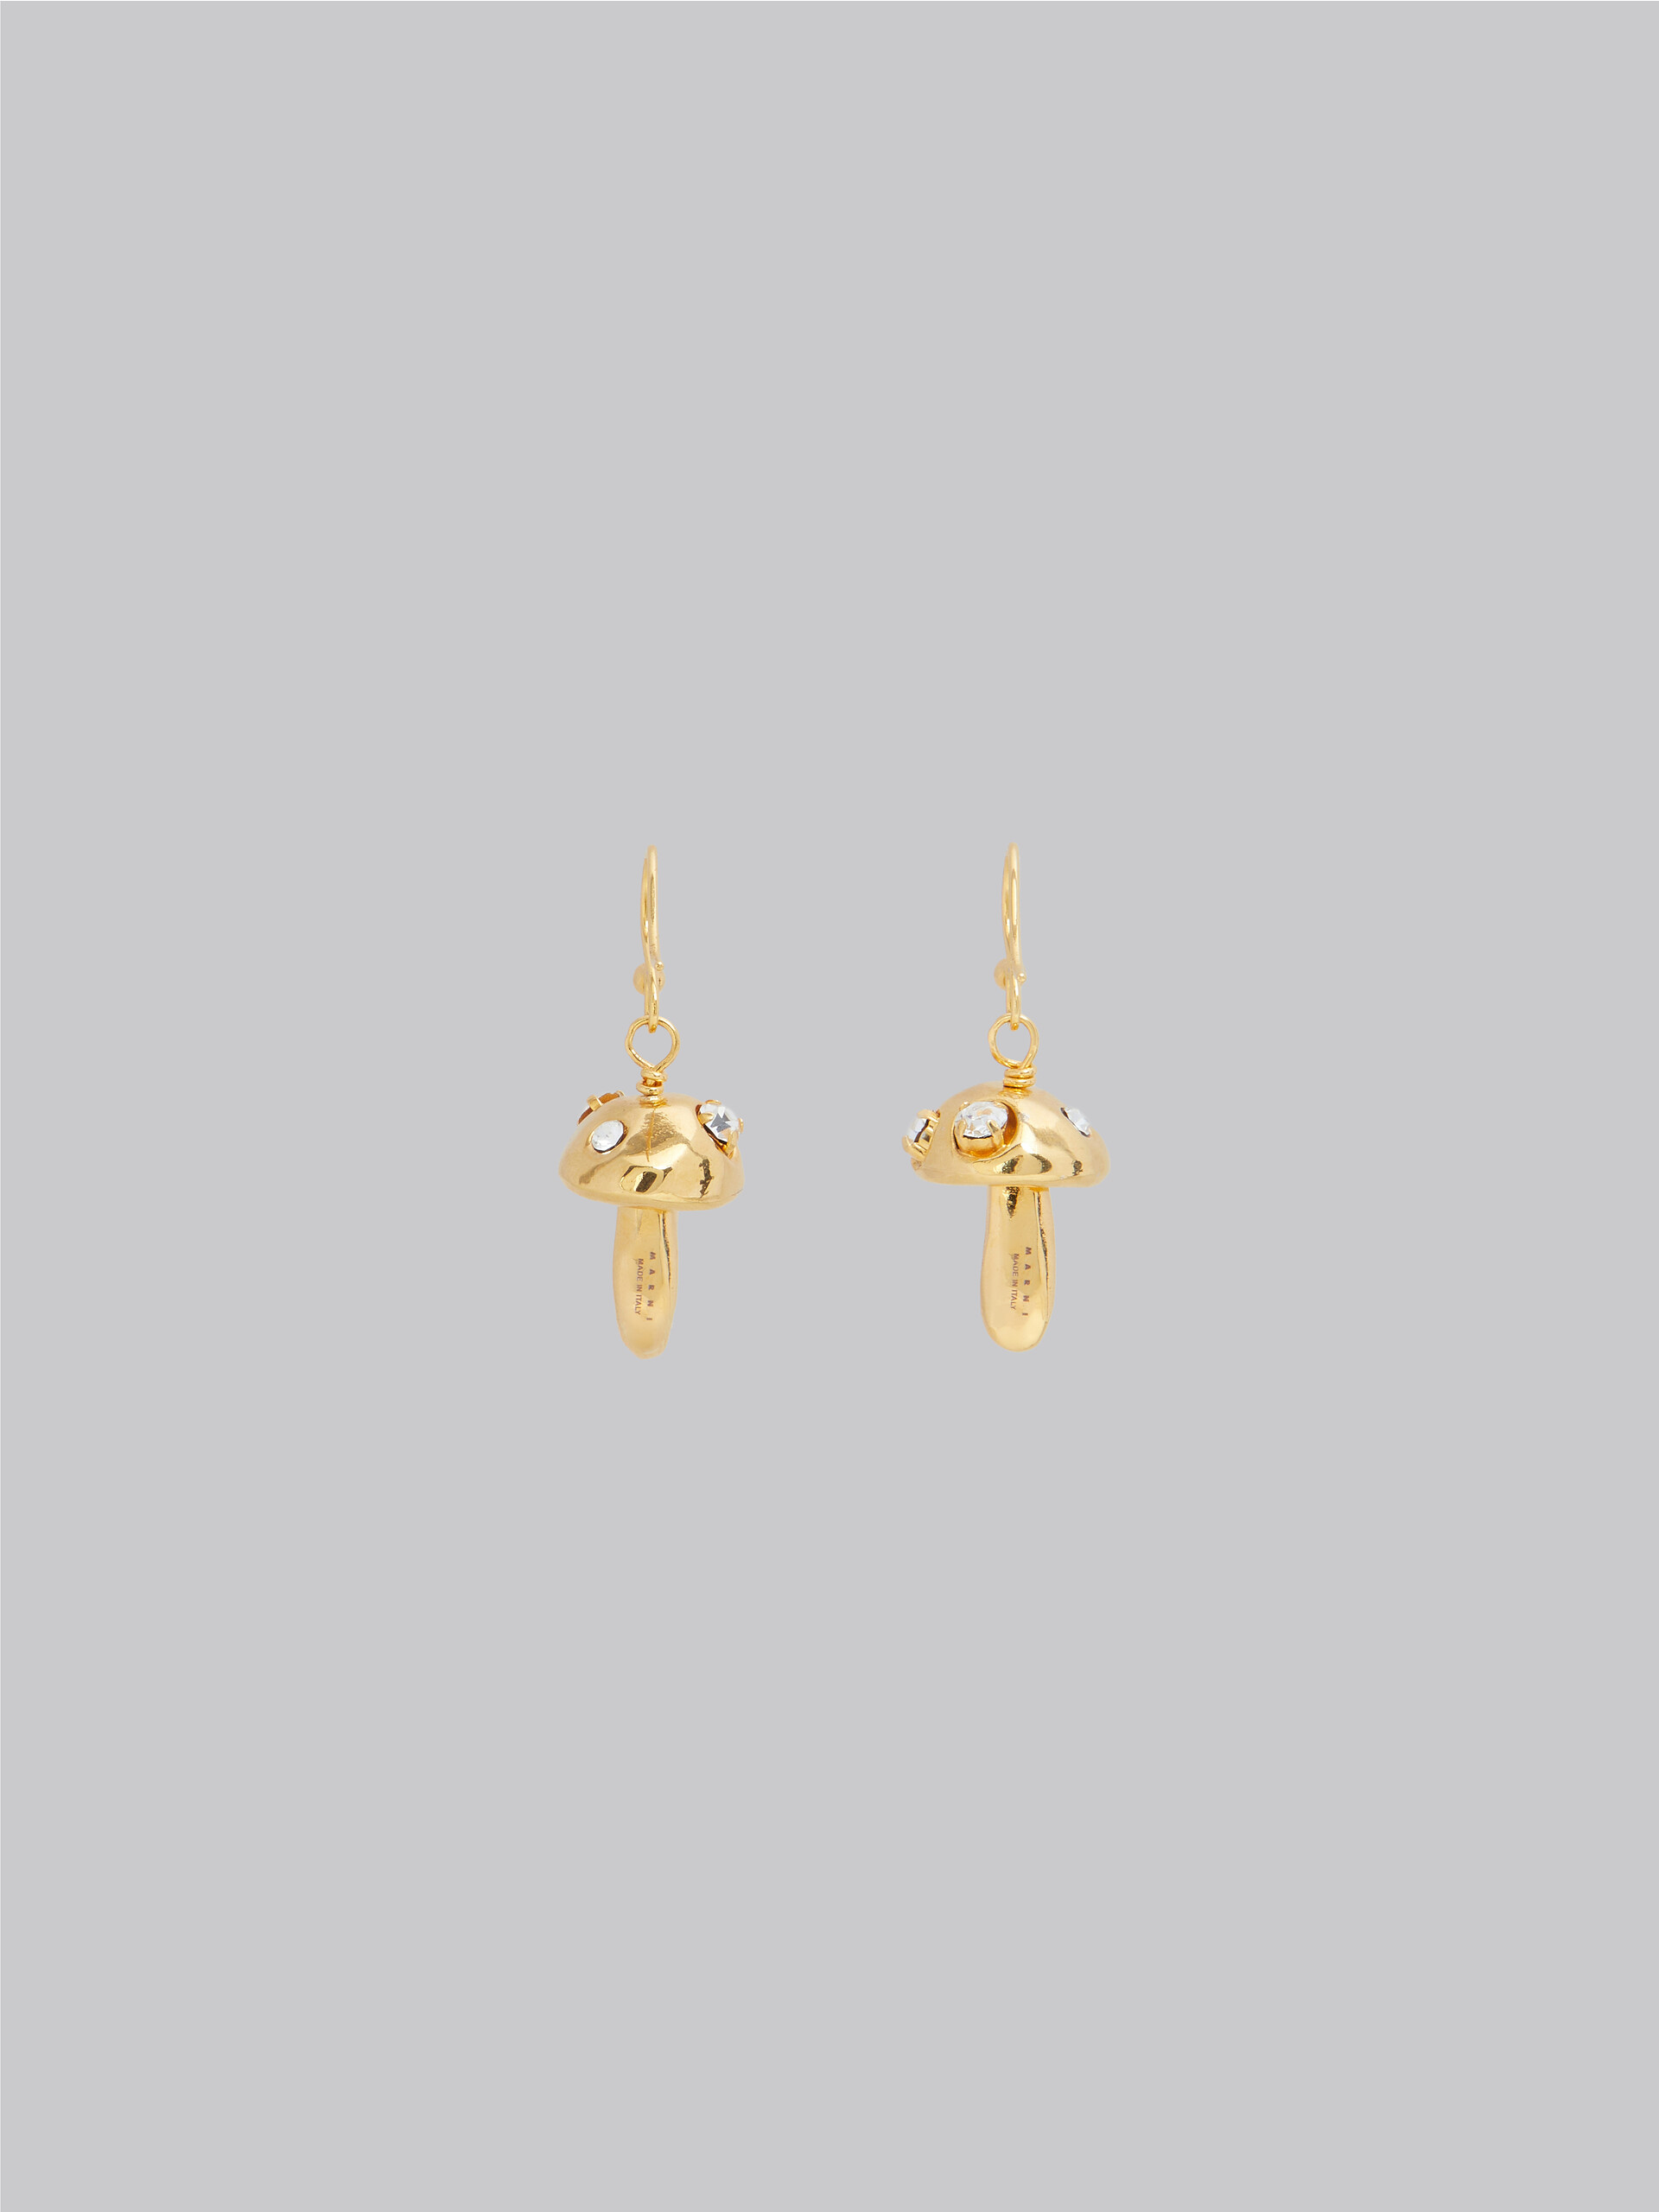 Rhinestone mushroom charm earrings - Earrings - Image 3